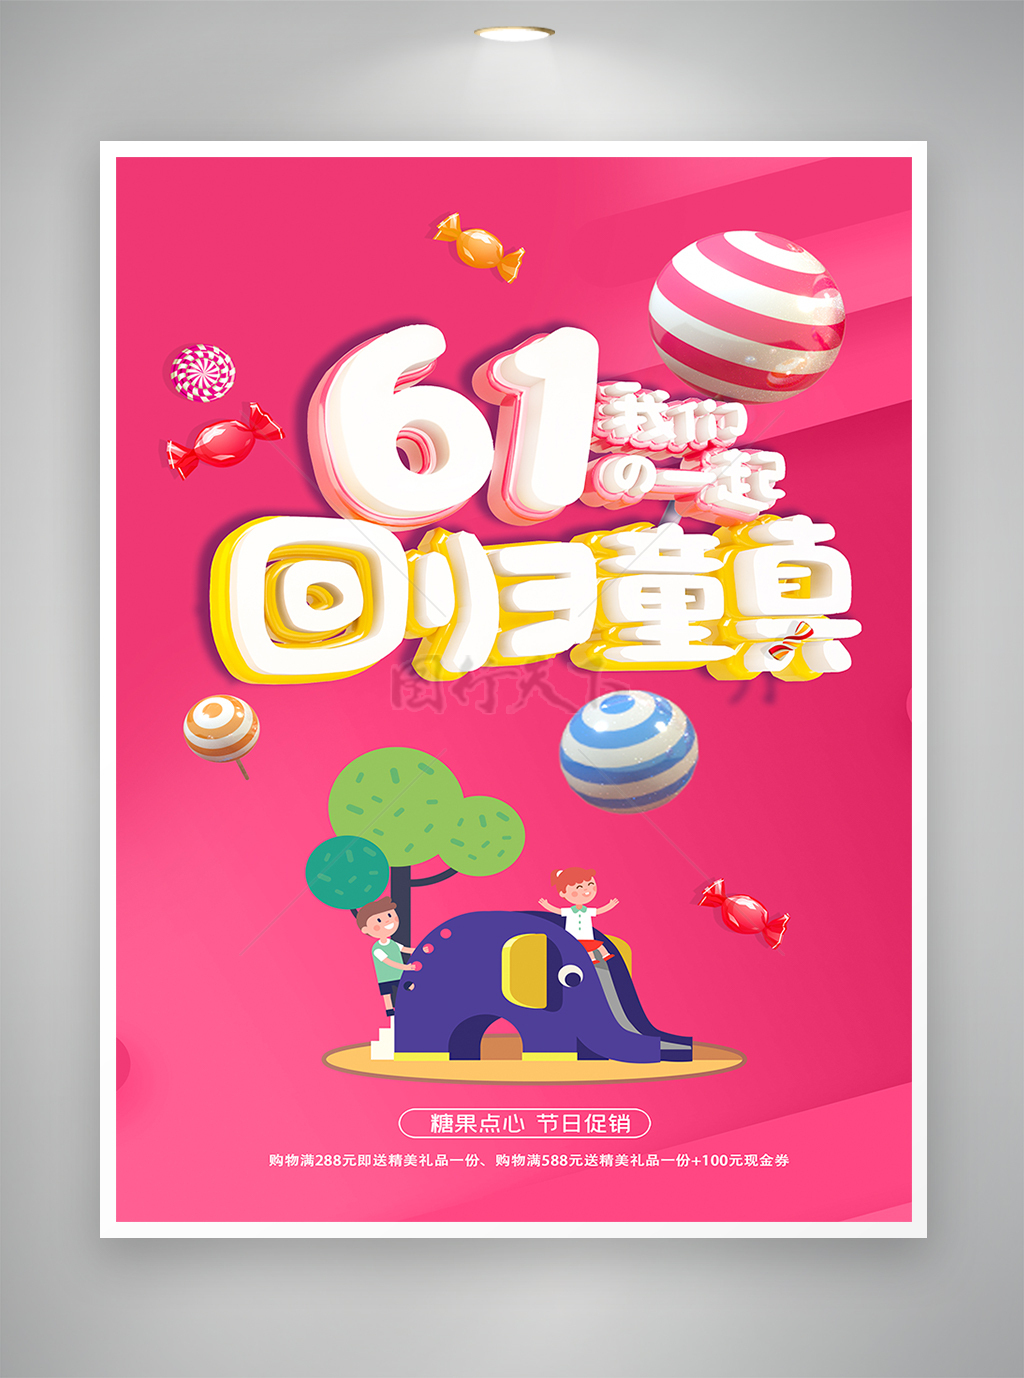 六一儿童节节日糖果点心促销宣传简约海报